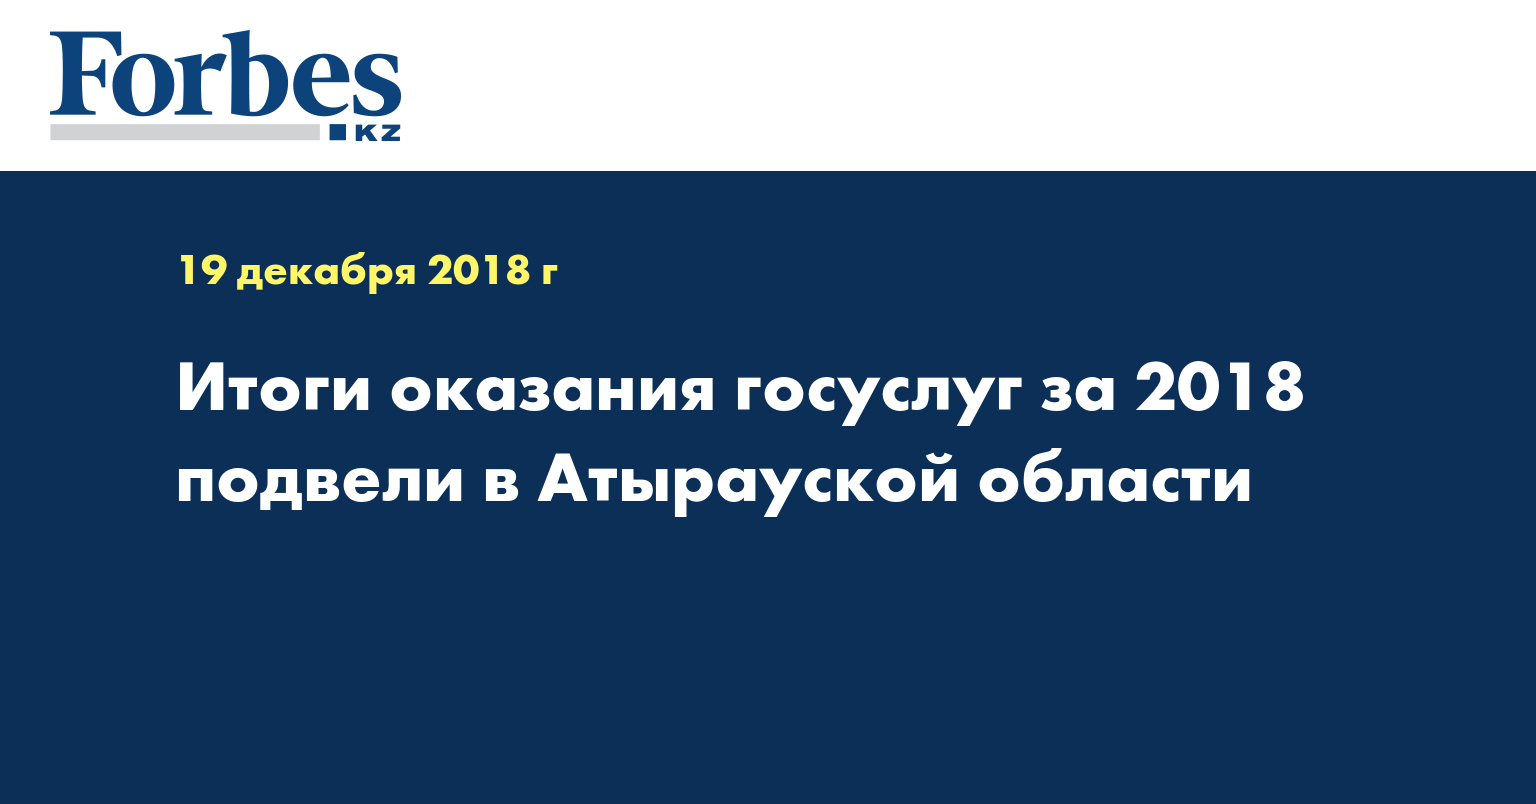 Итоги оказания госуслуг за 2018 подвели в Атырауской области